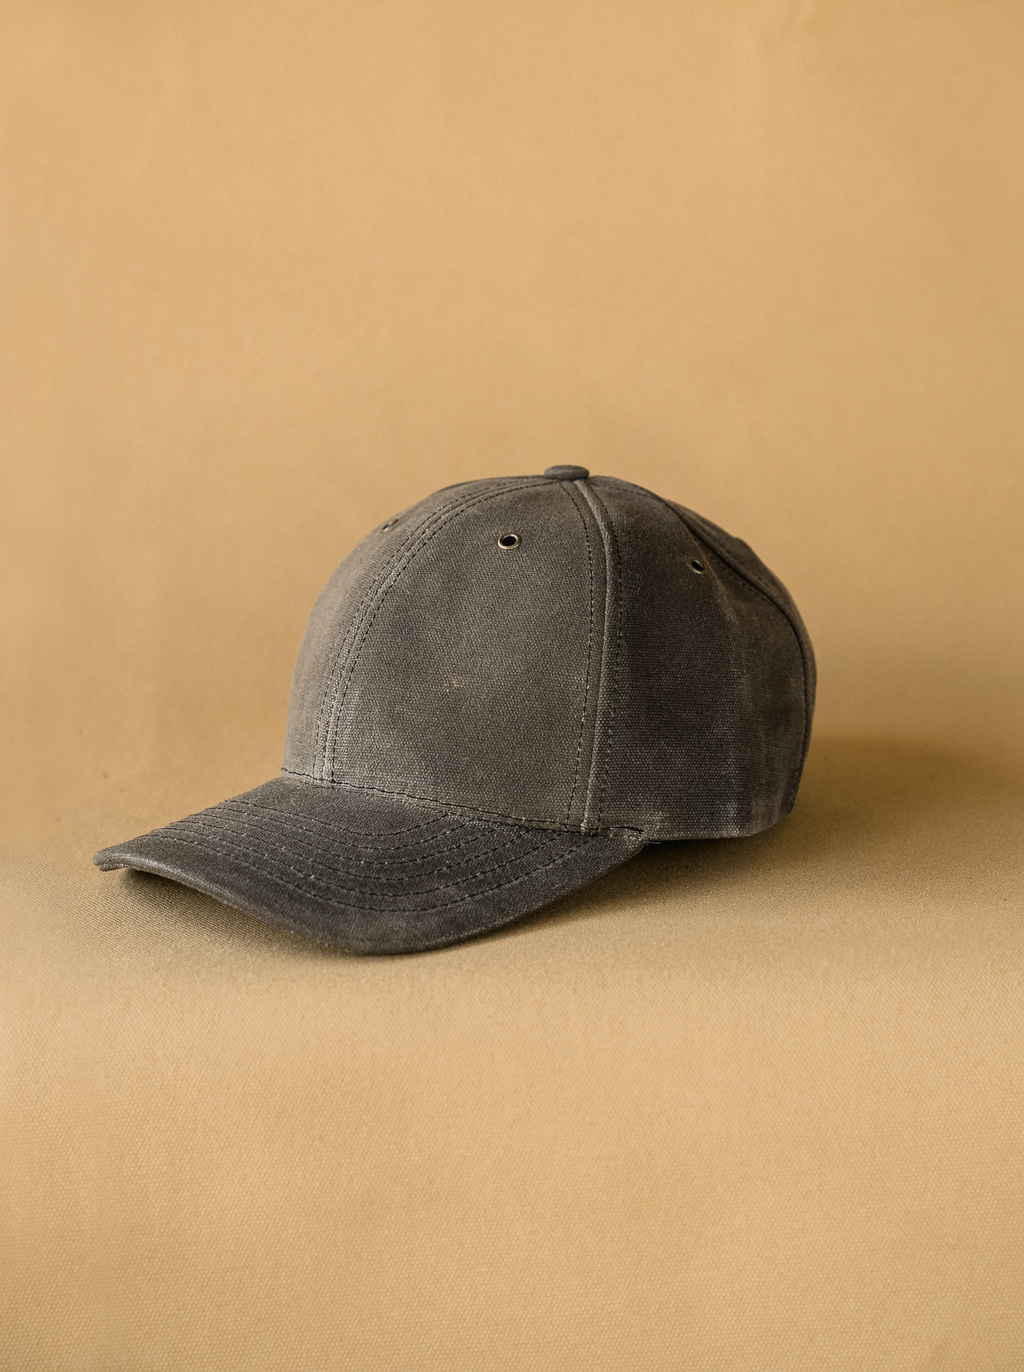 baseball cap plain